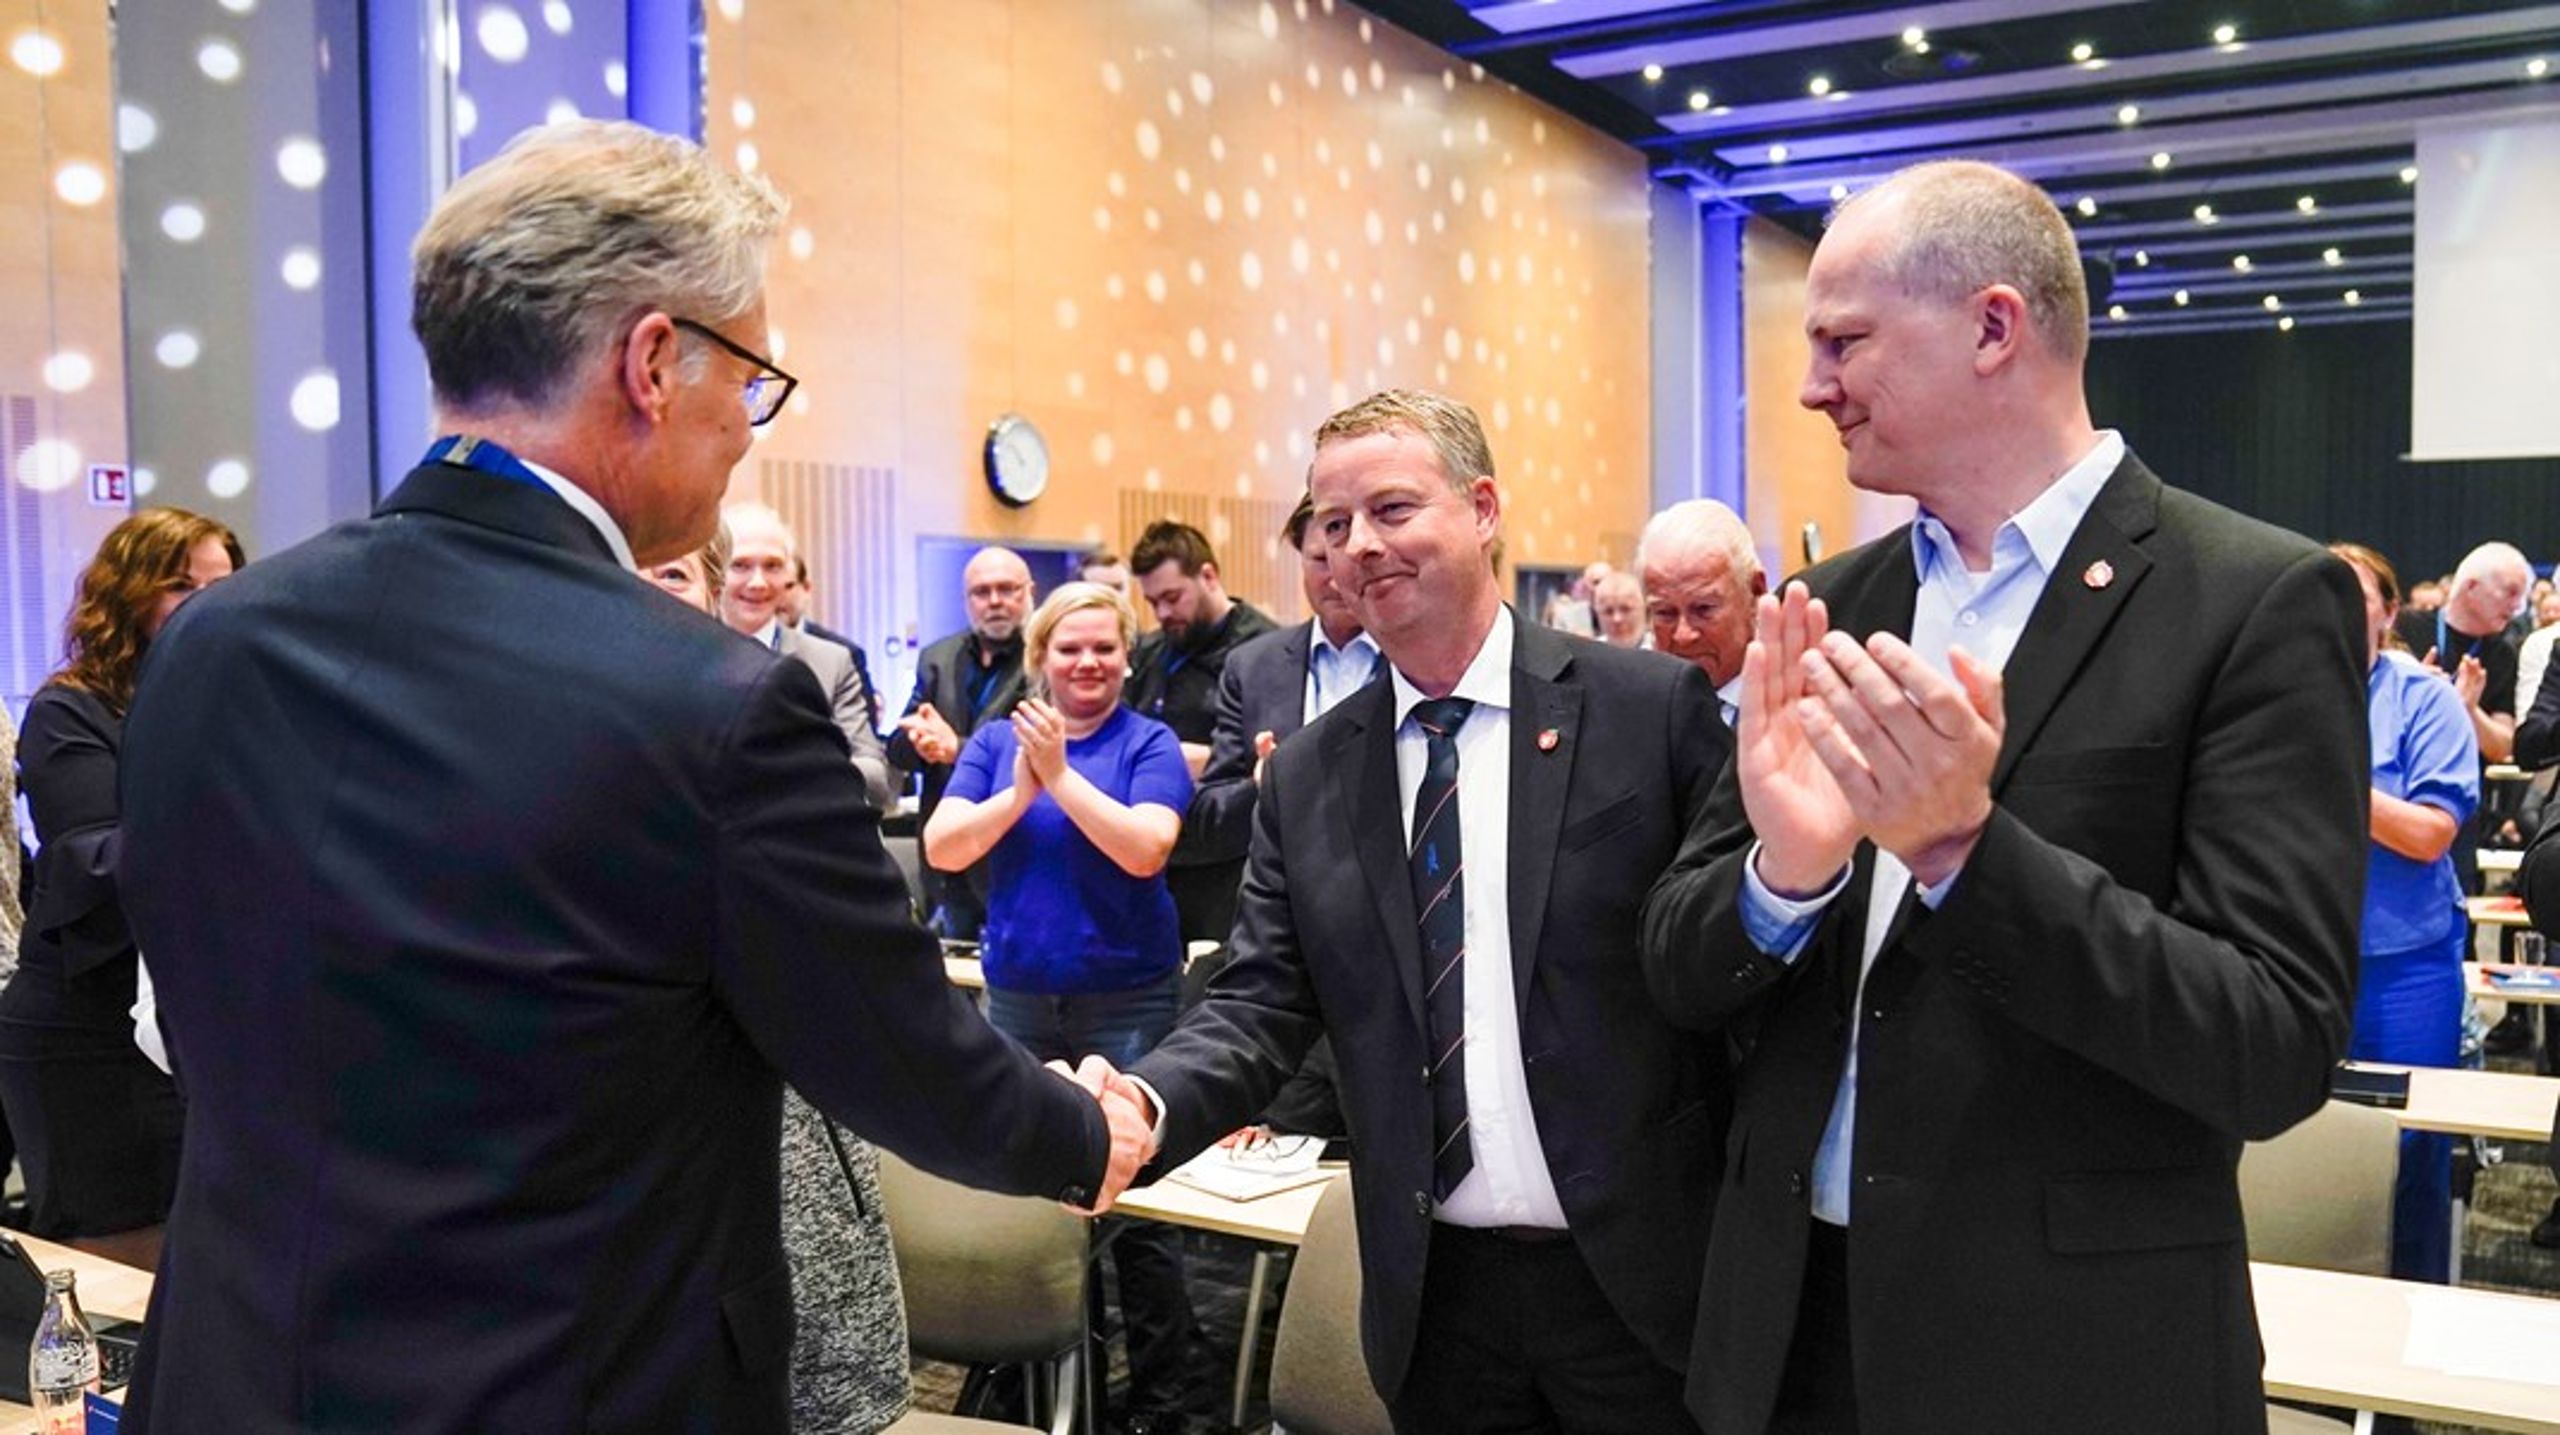 Hans Andreas Limi og Terje Søviknes gratuleres som Frps nye nestledere. Ketil Solvik-Olsen ønsket ikke gjenvalg, og er dermed uten verv i Frp for første gang på mange år.&nbsp;